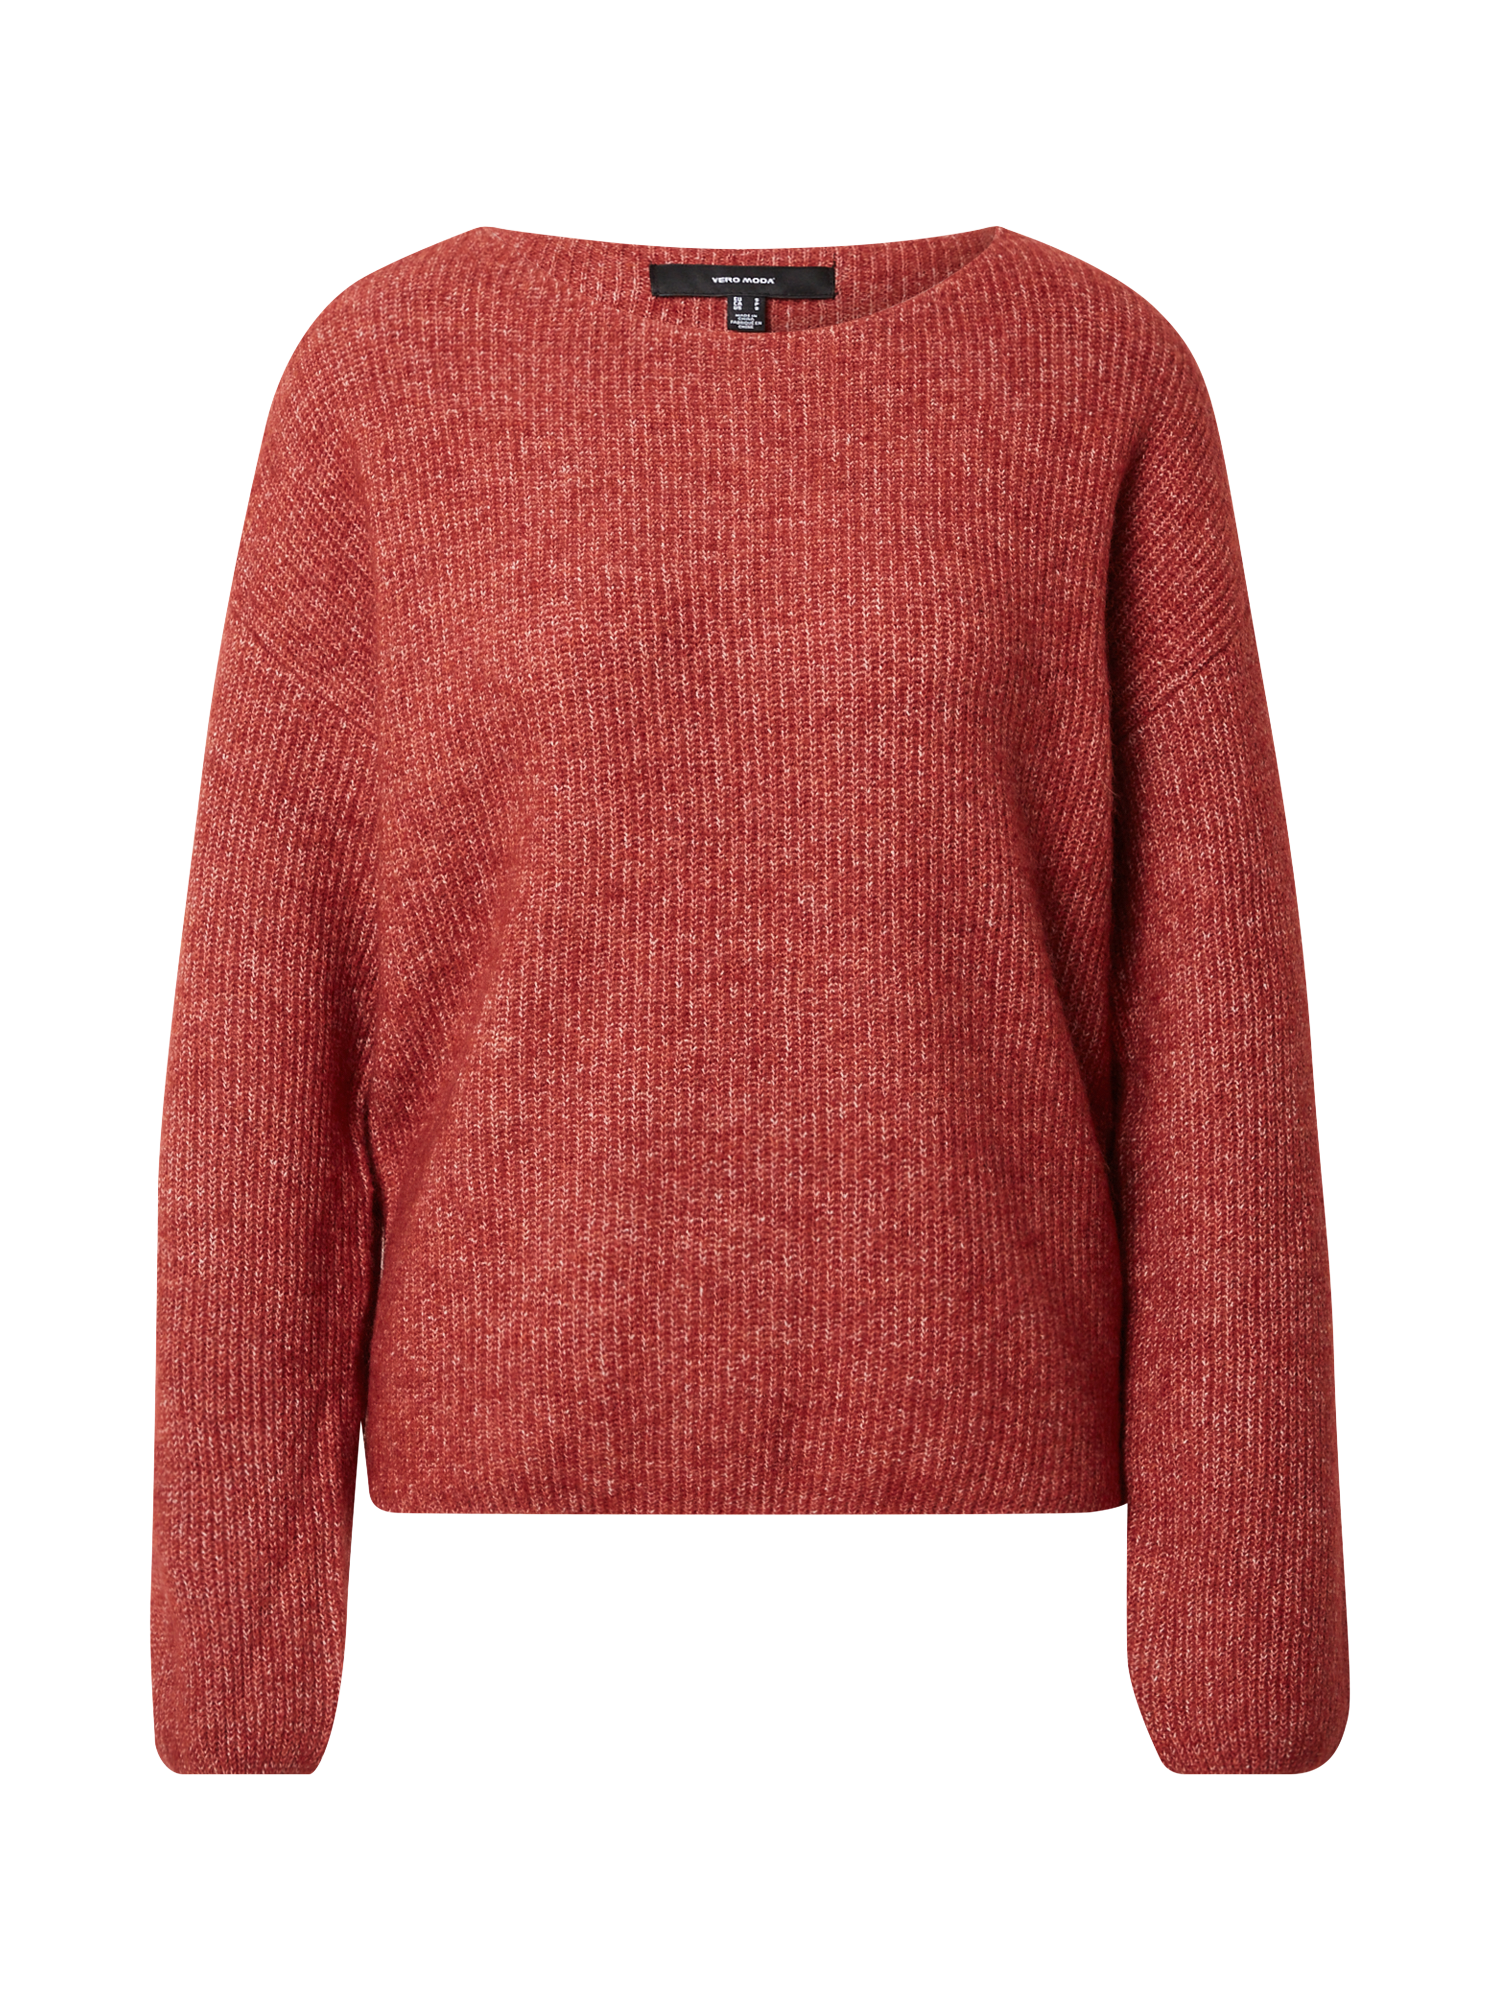 Swetry & dzianina Odzież VERO MODA Sweter Mette w kolorze Czerwonym 